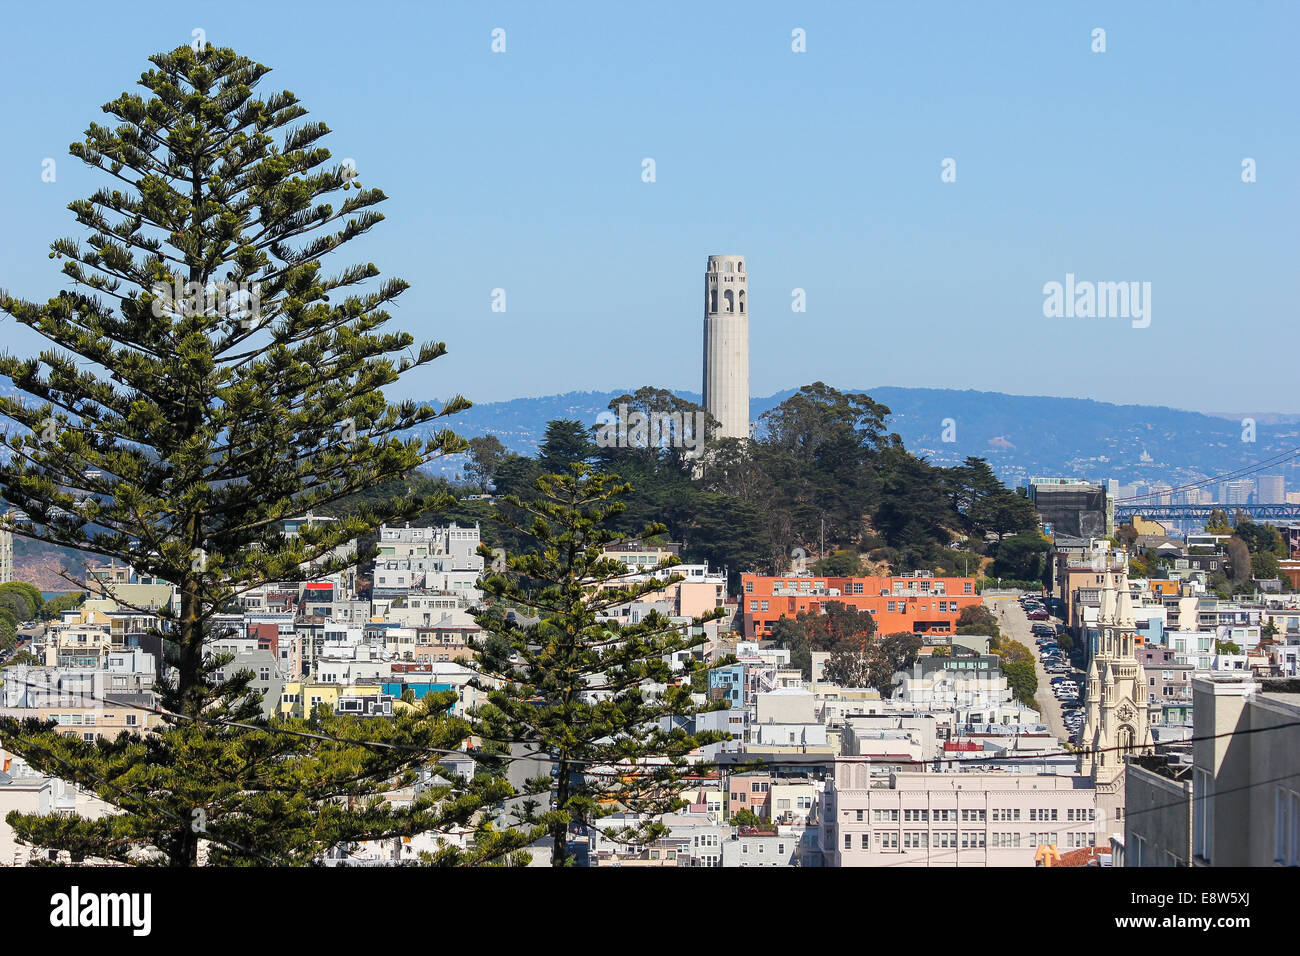 A view towards Coit Tower, San Francisco, California Stock Photo